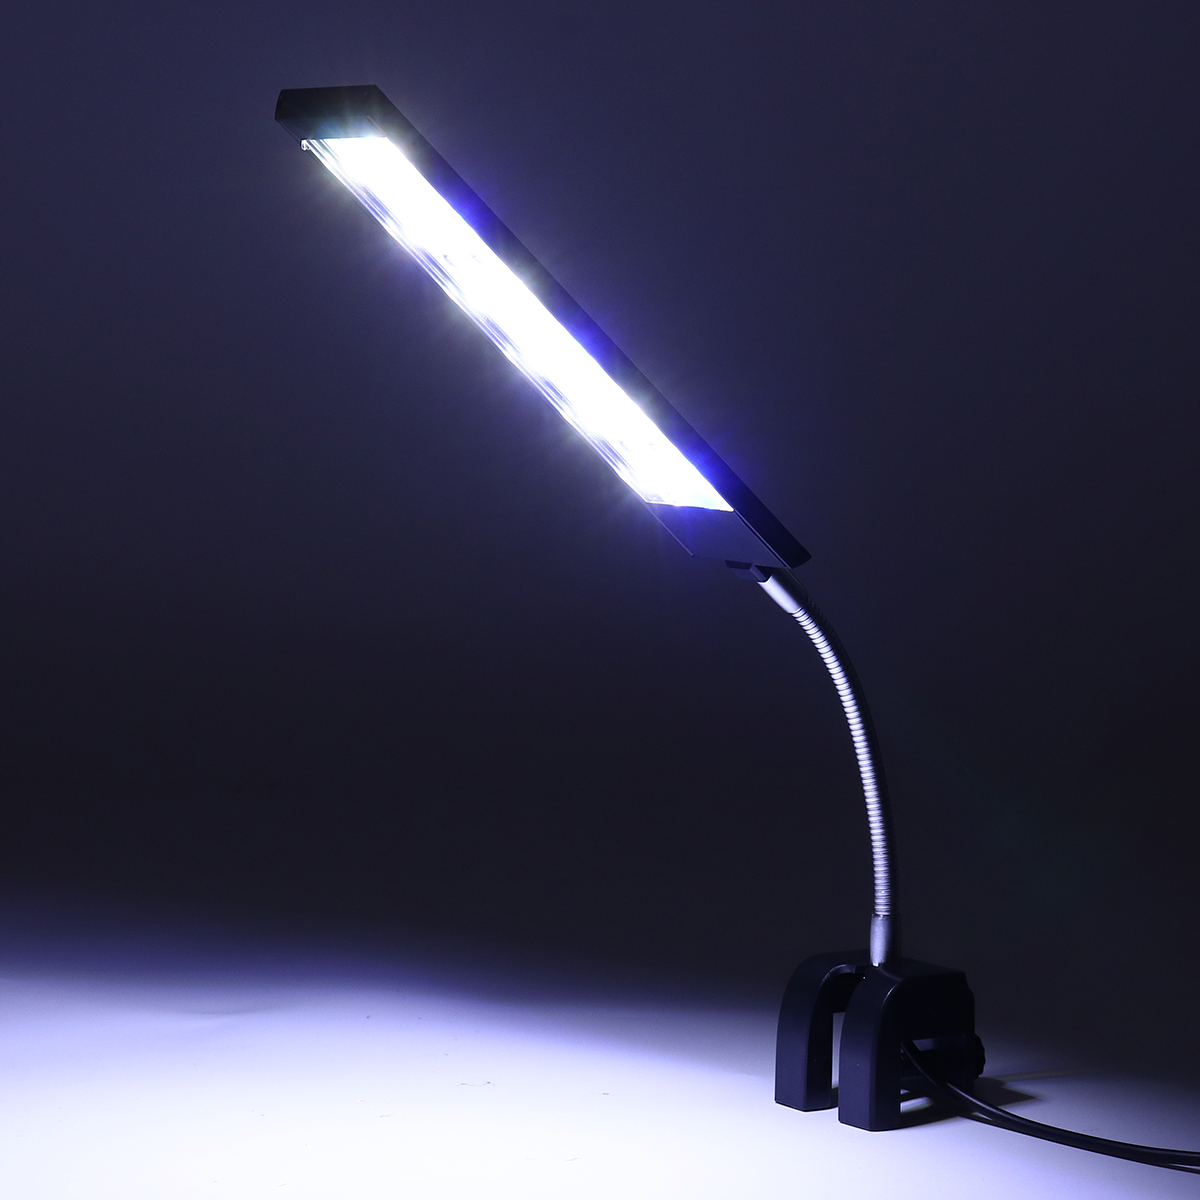 100-240V-7W-Clip-on-LED-Aquarium-Light-Fish-Tank-Decoration-Lighting-Lamp-with-White--Blue-LEDs-Touc-1640560-7